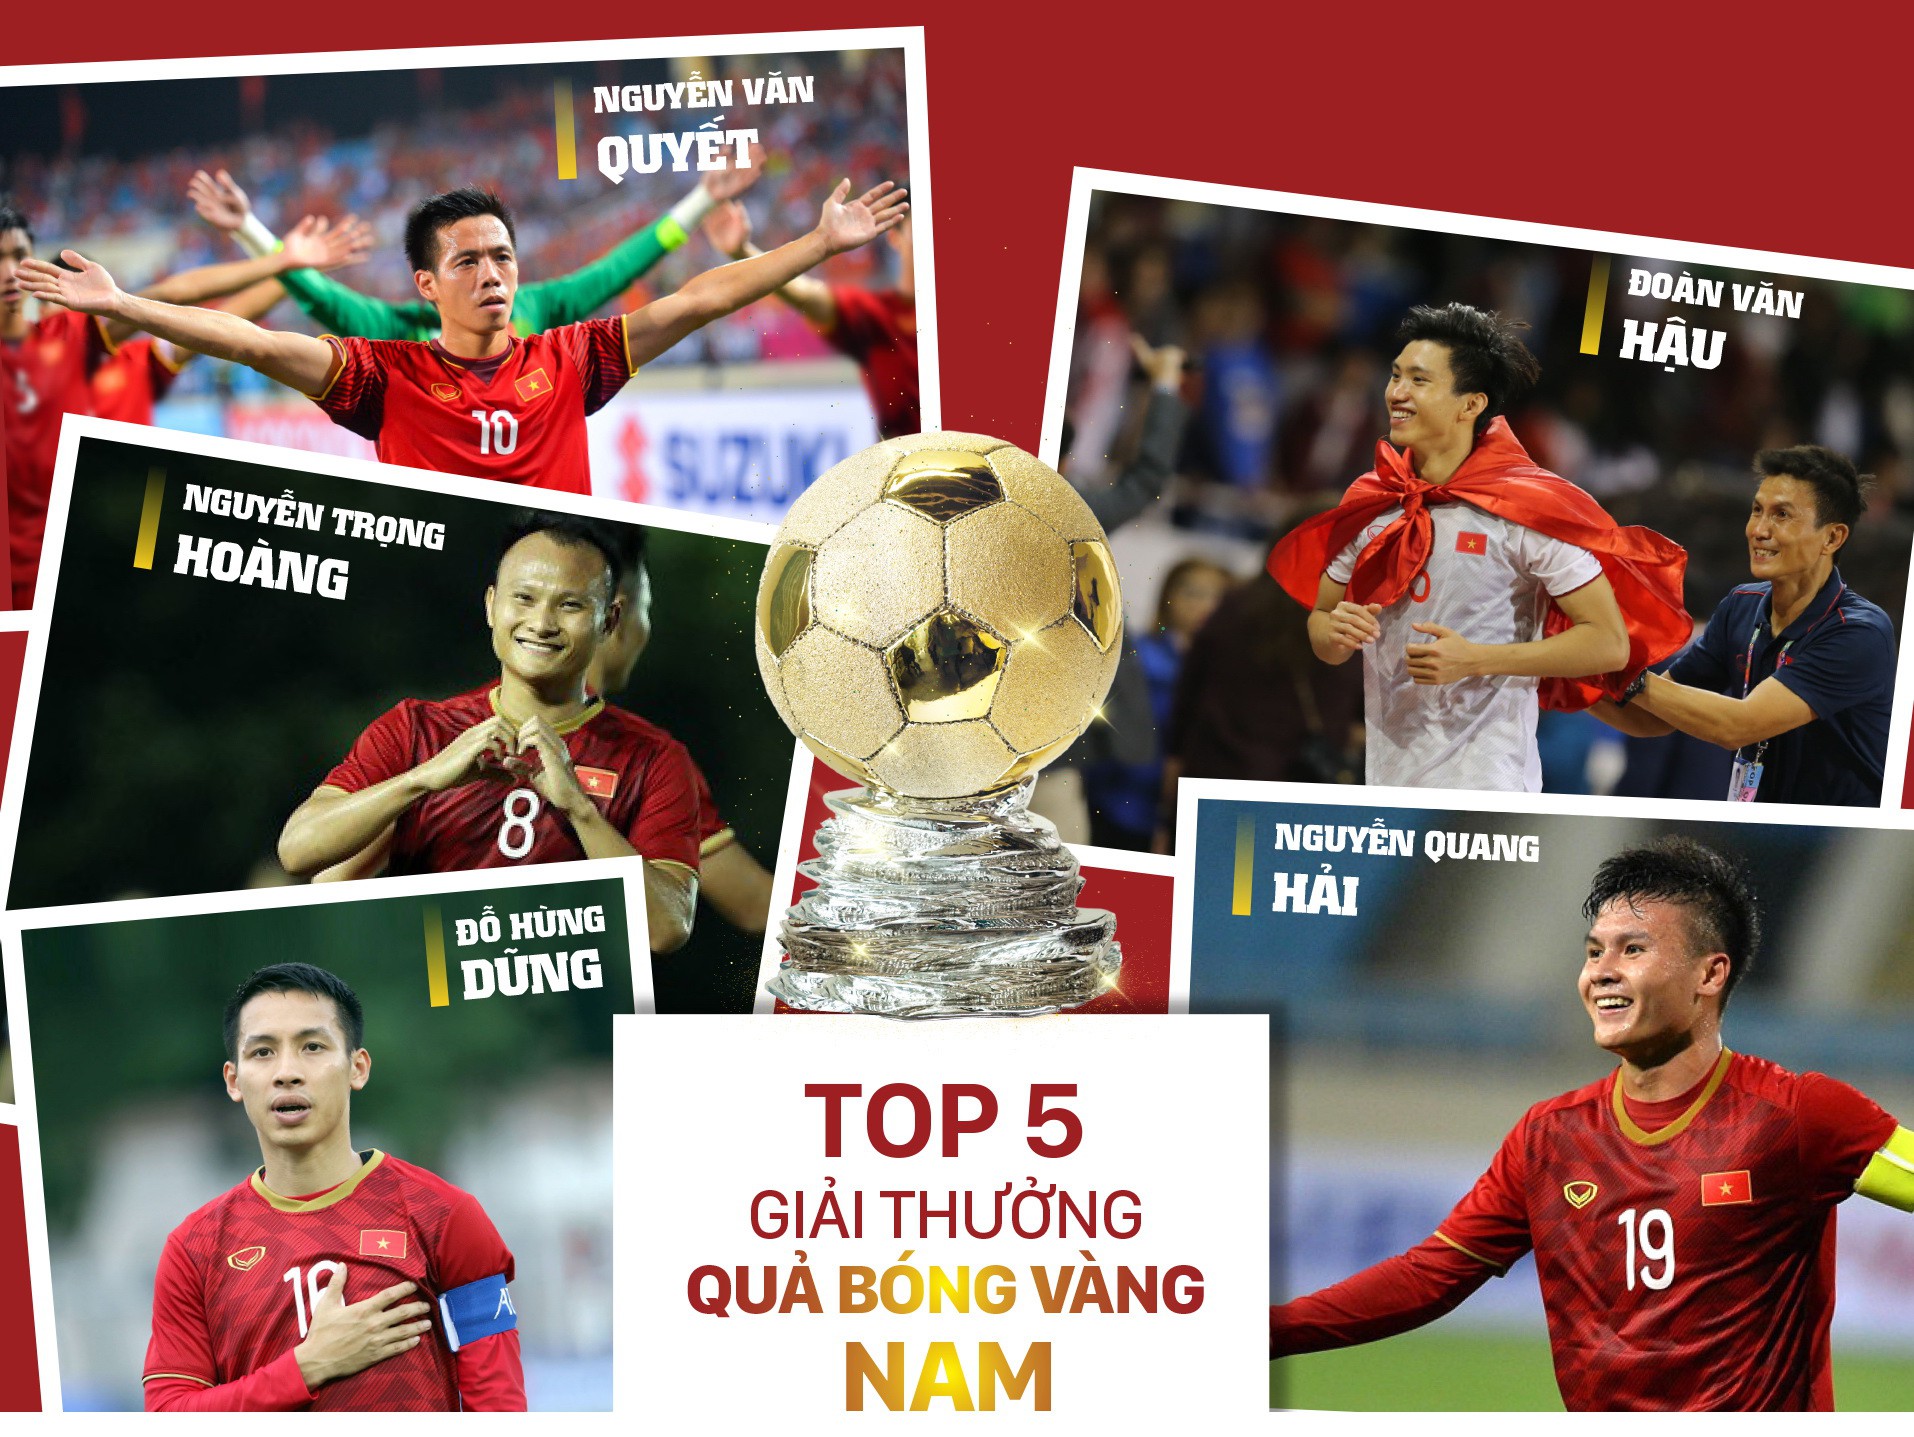 top 5 qua bong vang viet nam 2019